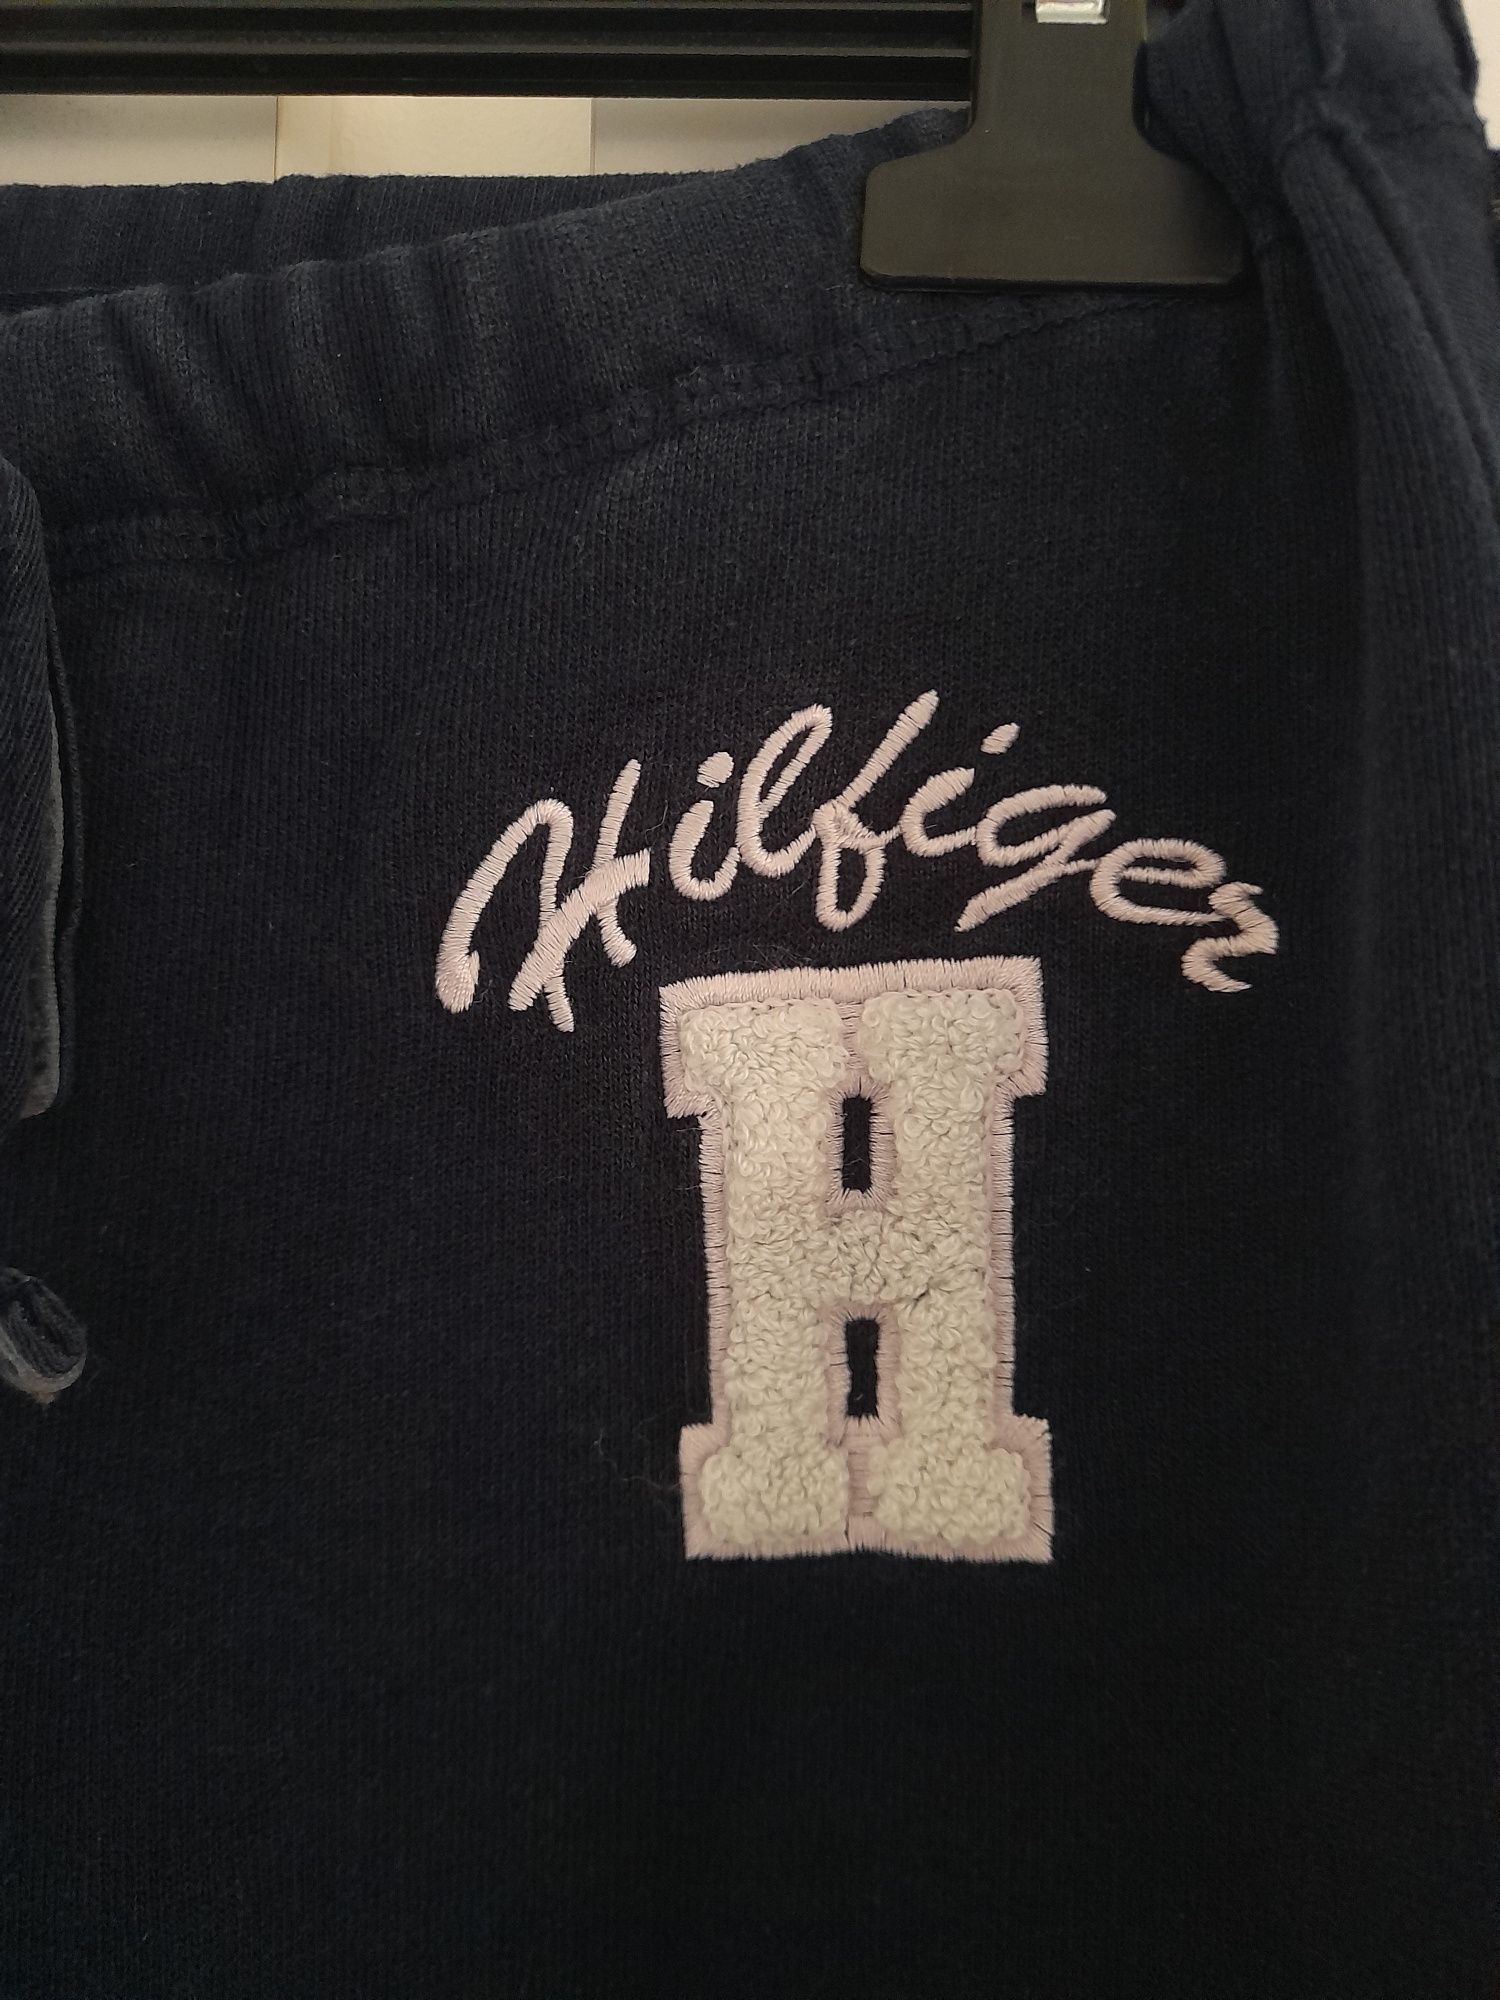 Pantaloni Tommy Hilfiger+ tricou Moncler